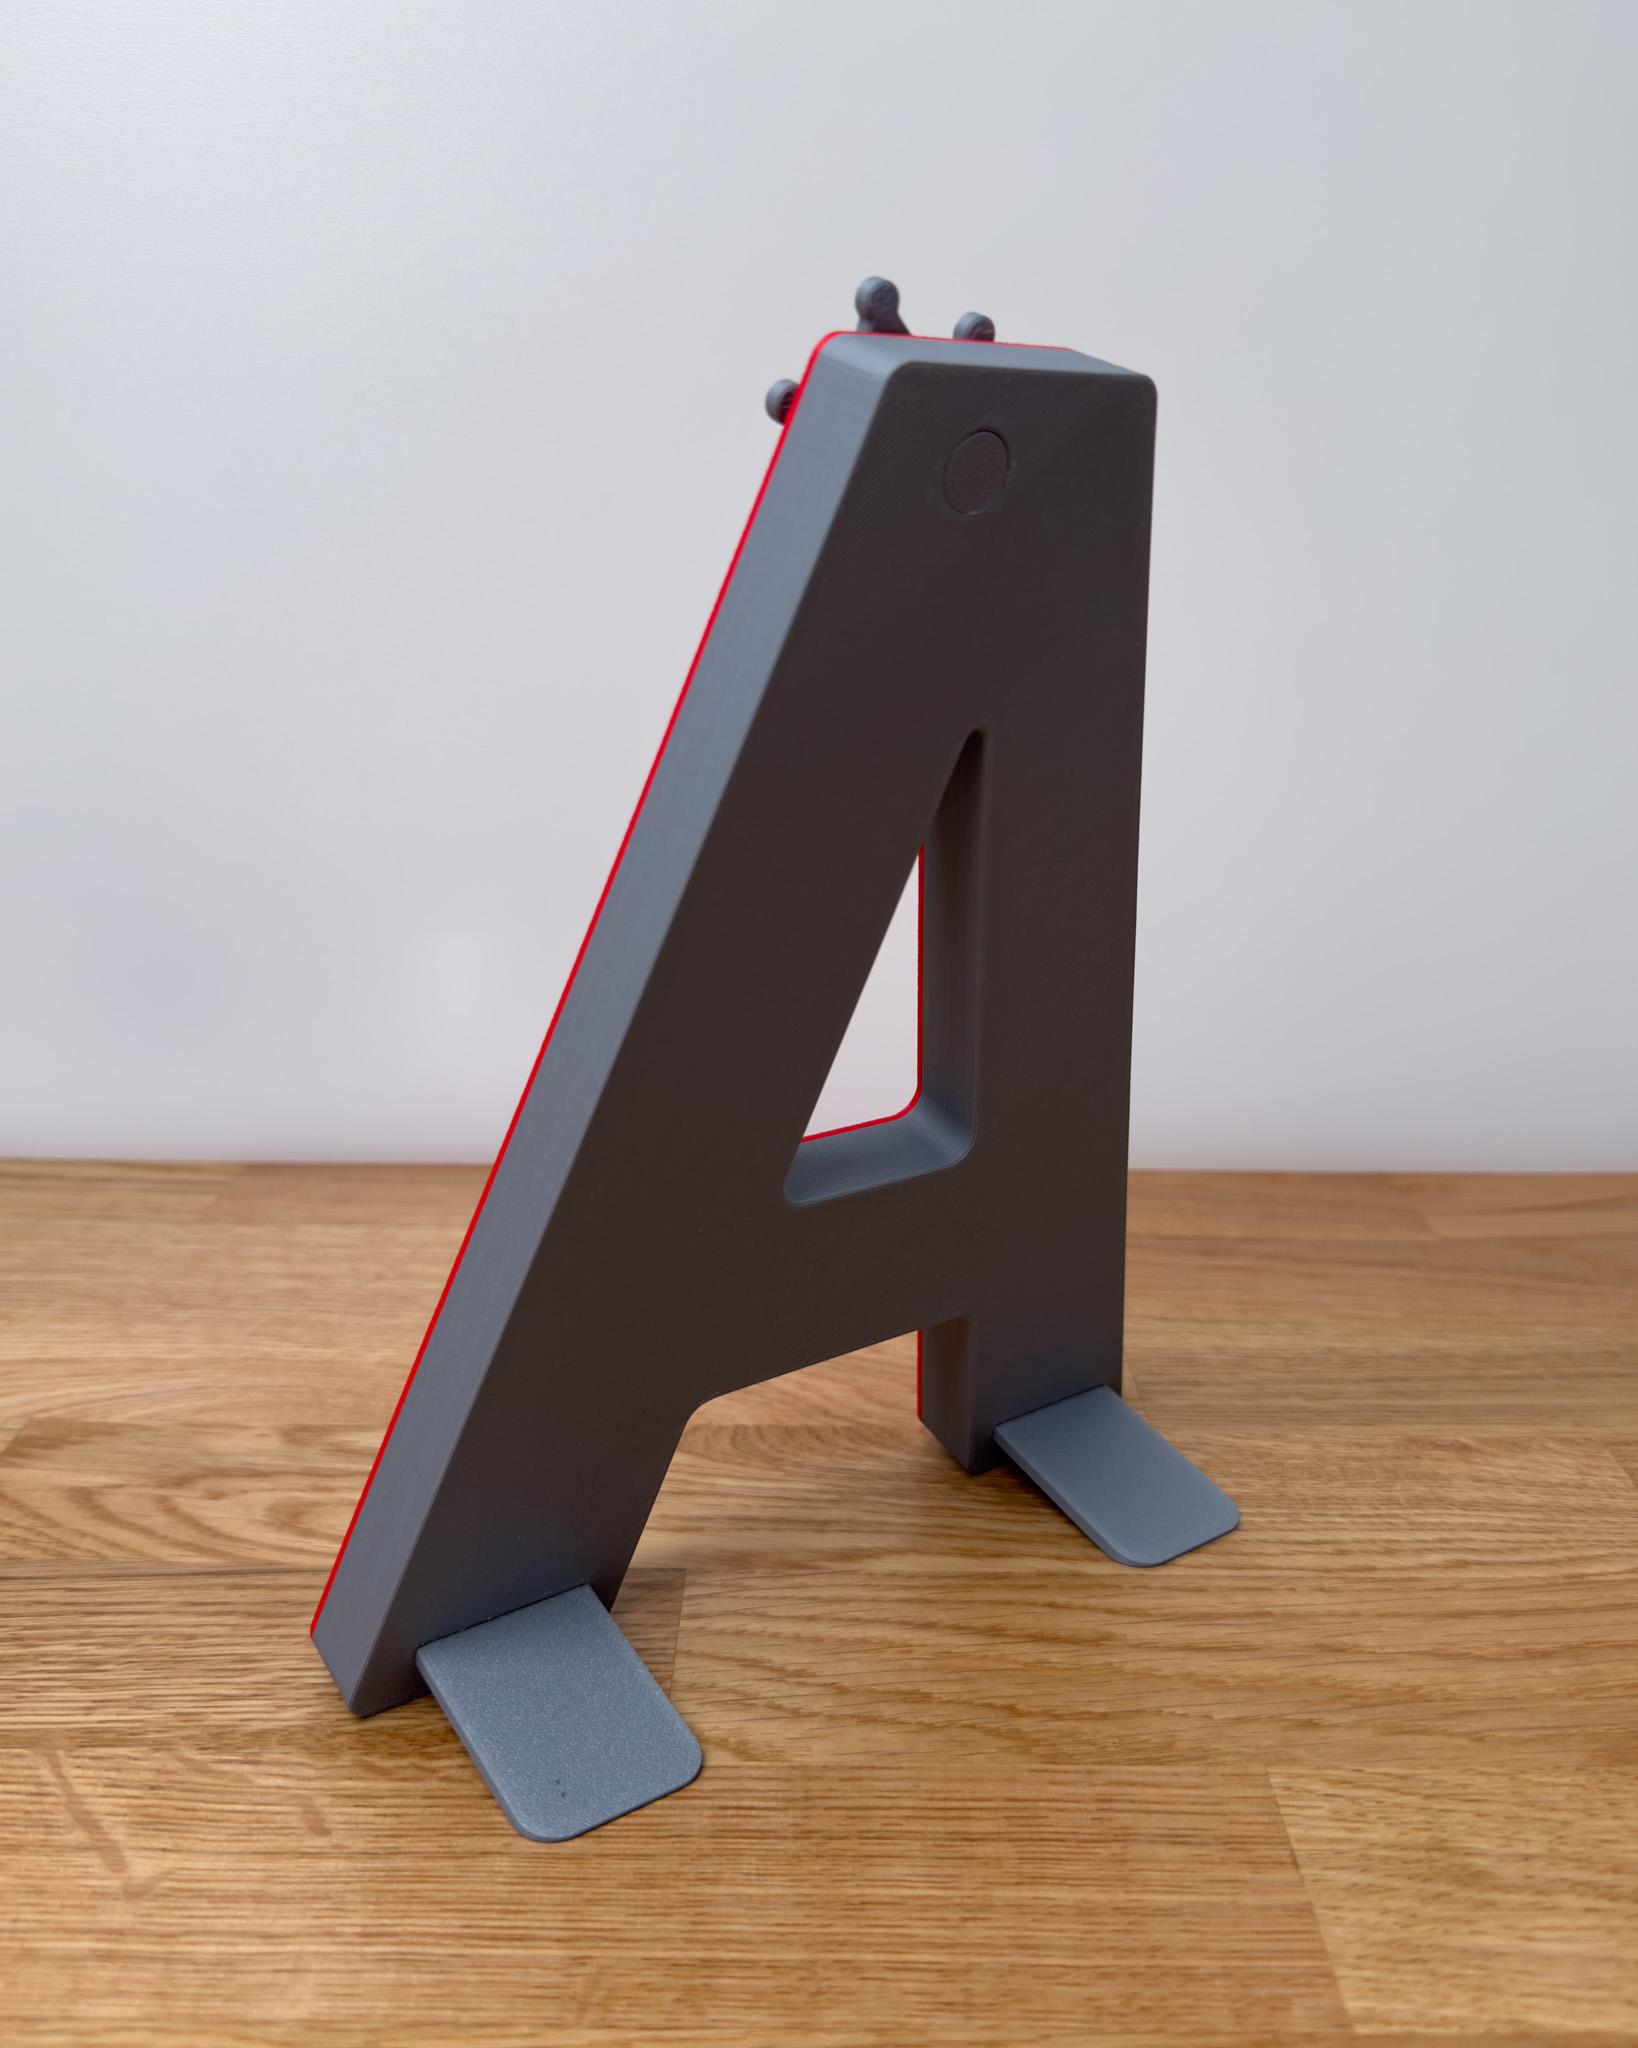 3D Letter D - by TeeTi3D 3d model